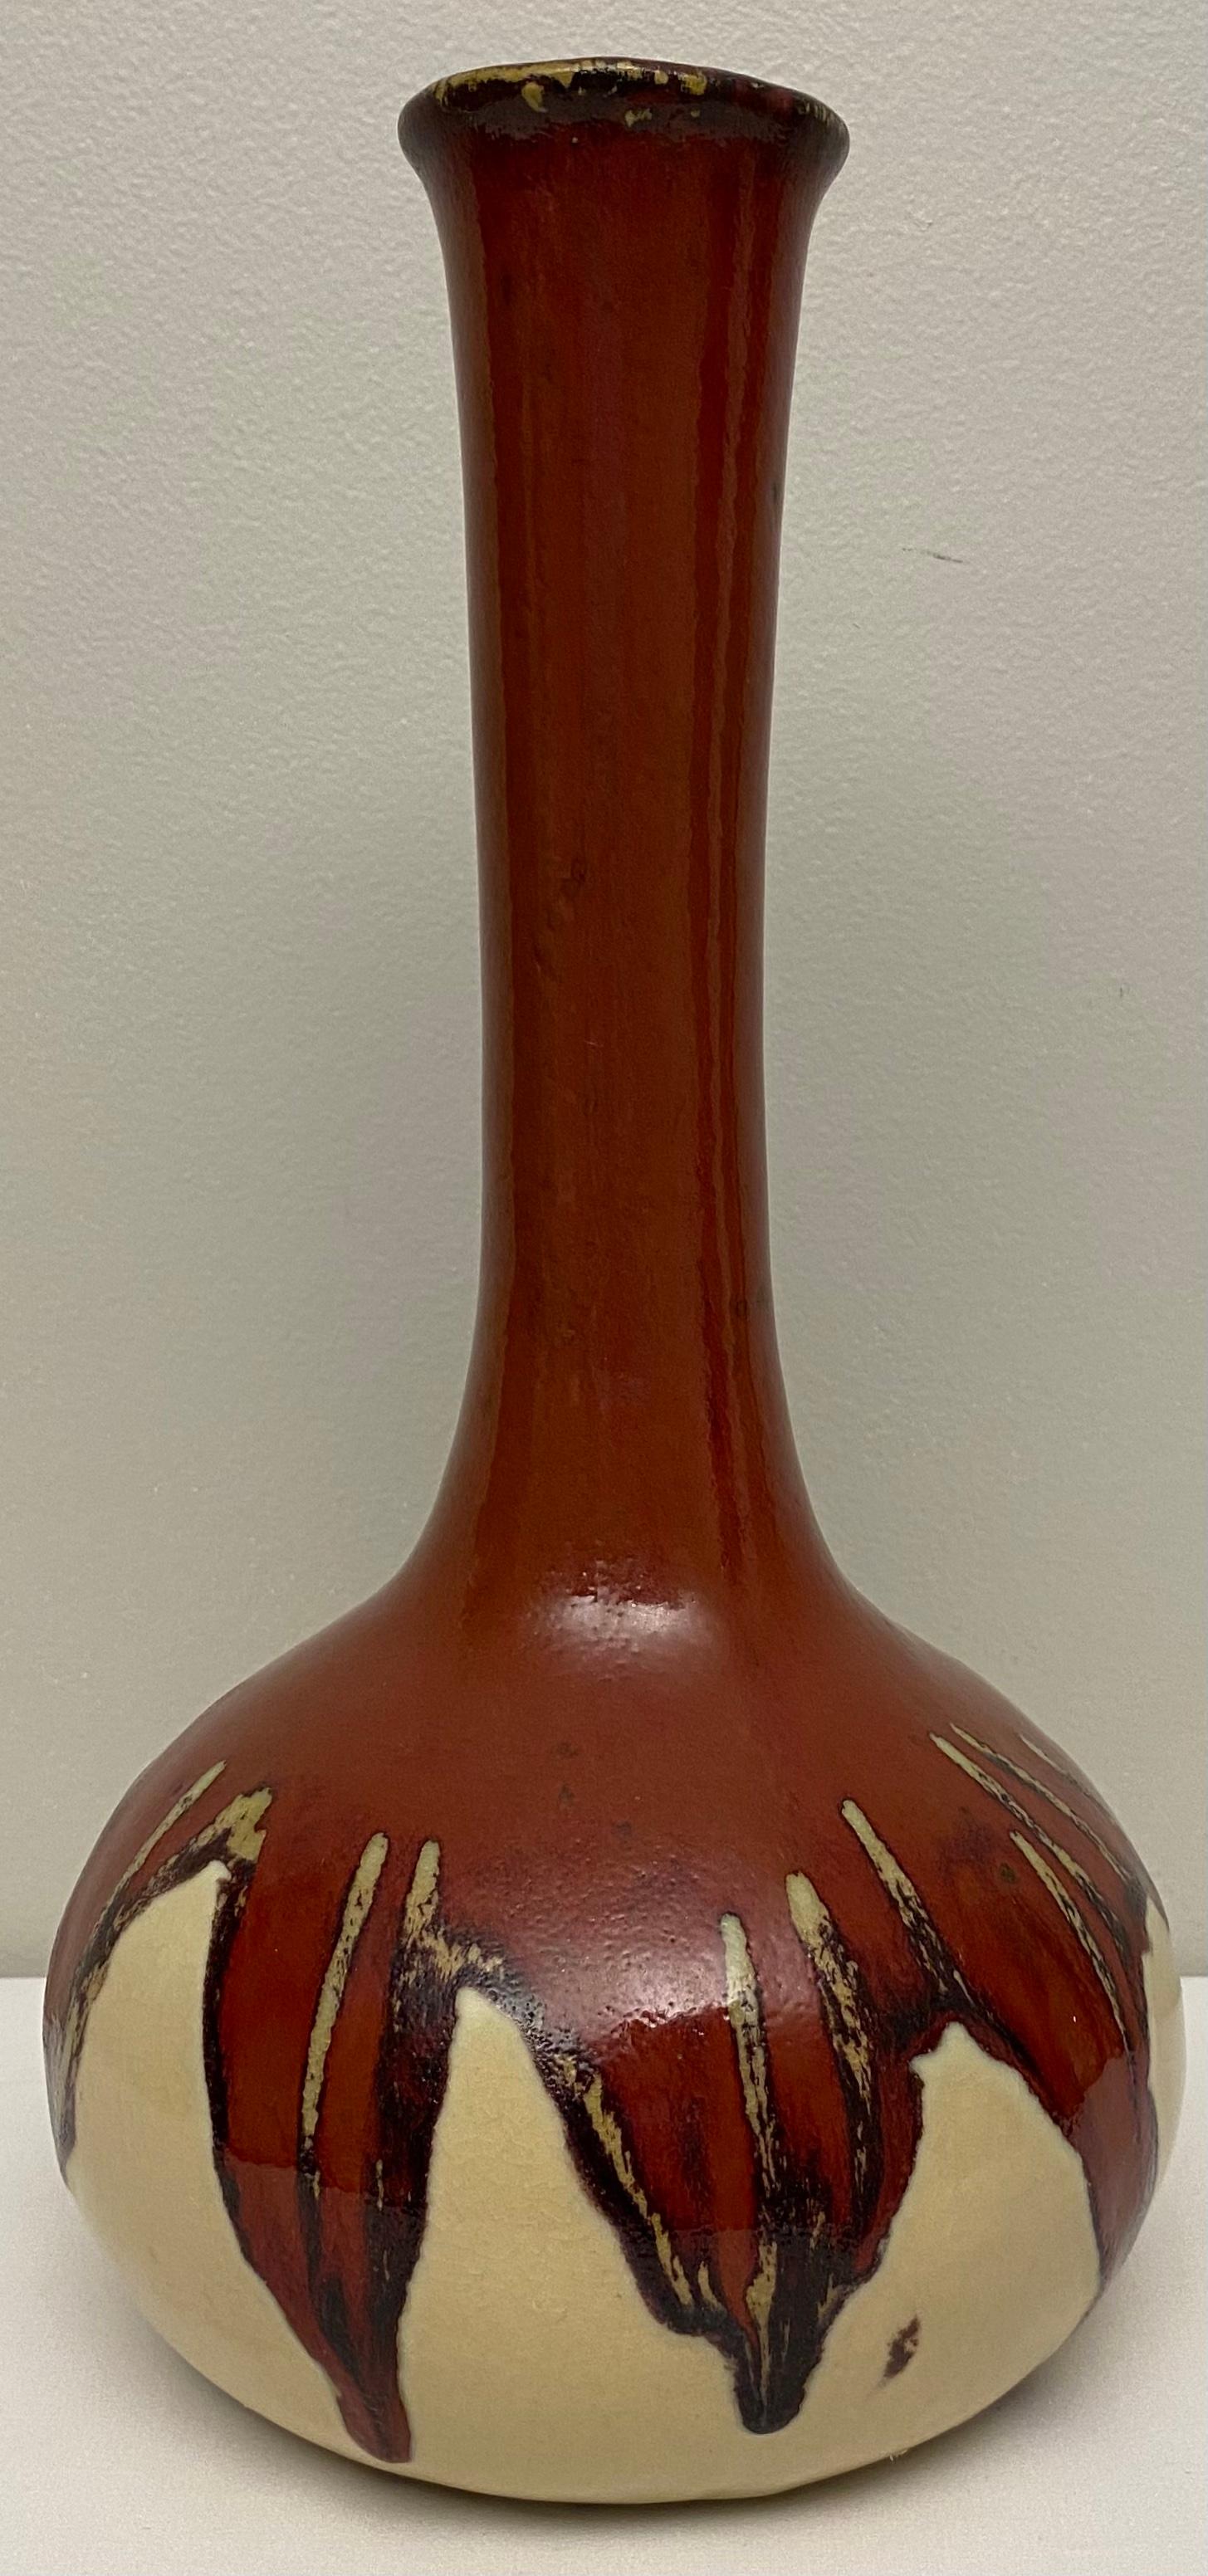 Eine schöne Qualität Südwesten Native American Stil Keramik-Vase. 
Durch die neutralen Farbtöne passt diese Vase besonders gut in ein rustikales oder zeitgenössisches Ambiente. 

Perfekt, um Ihre Lieblingsblumen auf einem Tisch, einer Arbeitsplatte